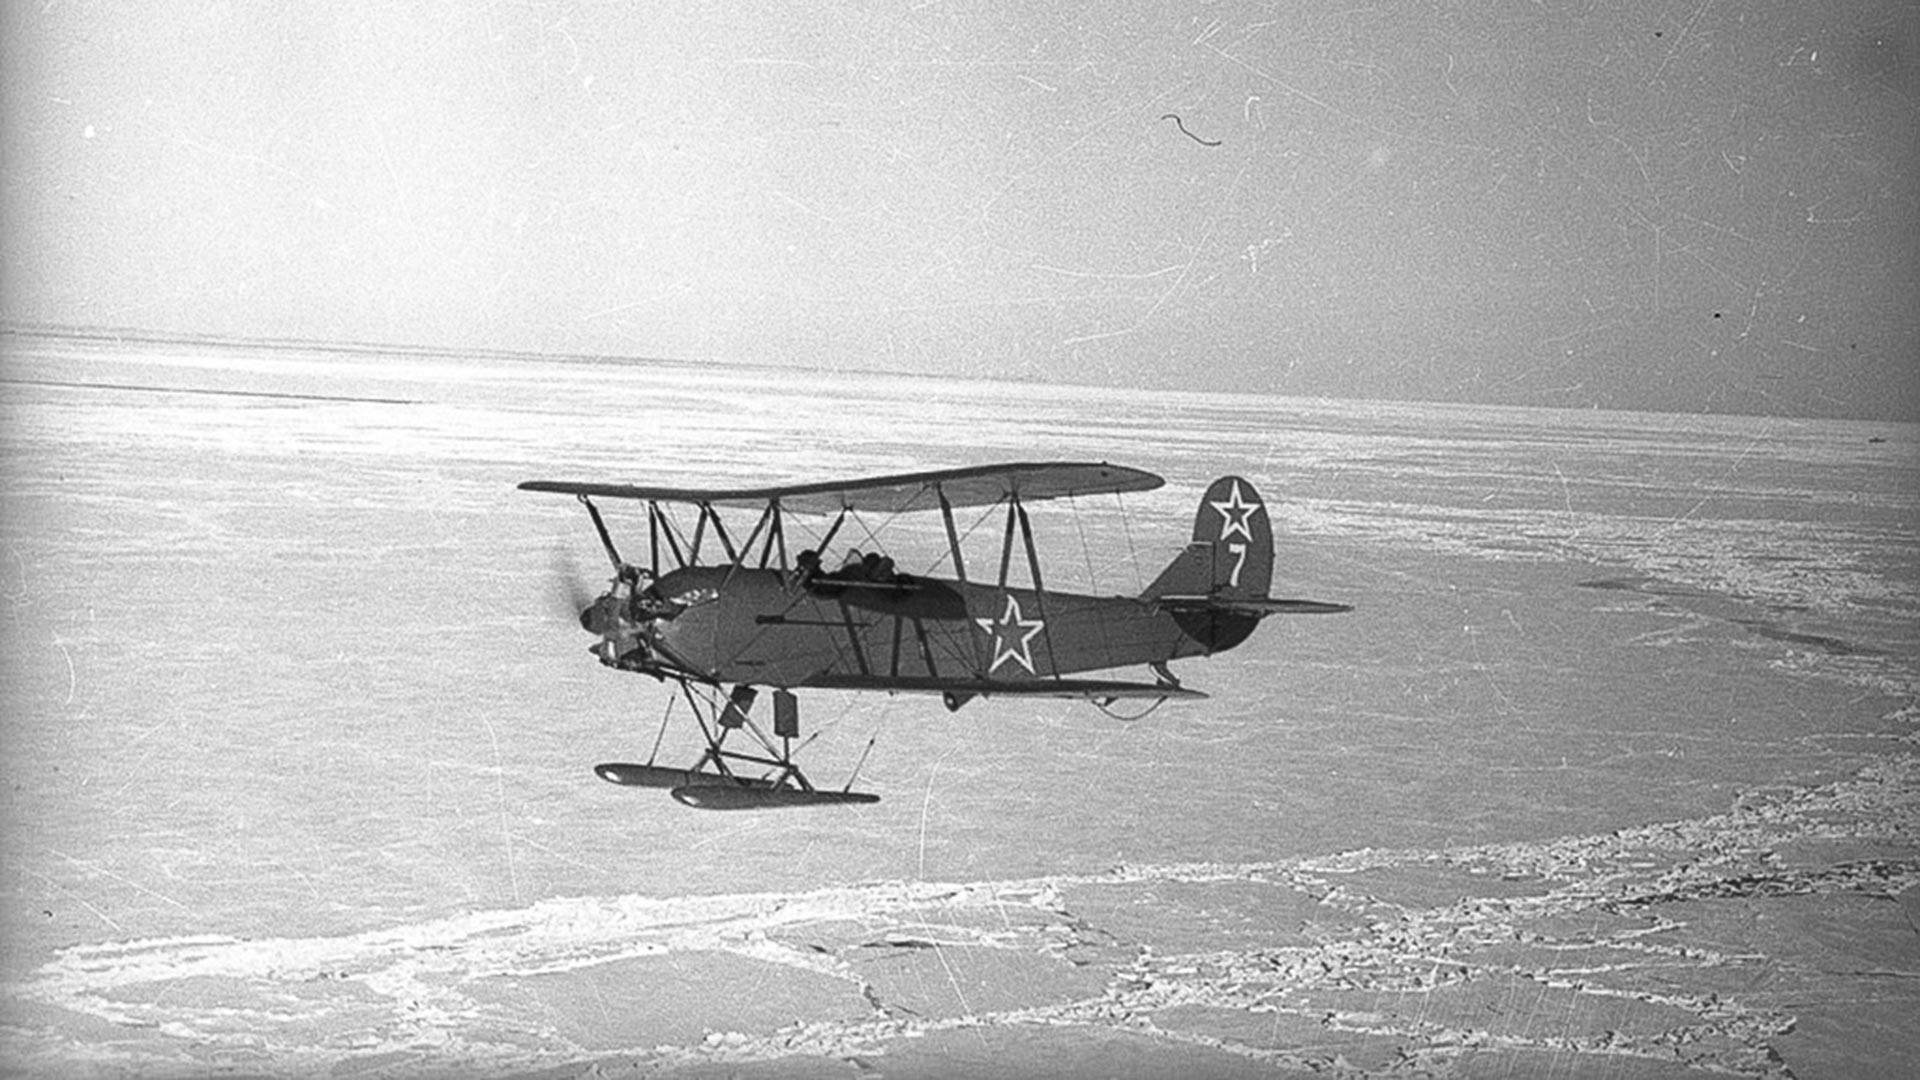 Авион У-2 бр. 7 ће оборити непријатељска ПВО у ноћи уочи 1.8.1943. Посада (пилот Полуњина Валентина Ивановна и навигатор Каширина Глафира Алексејевна) ће погинути.